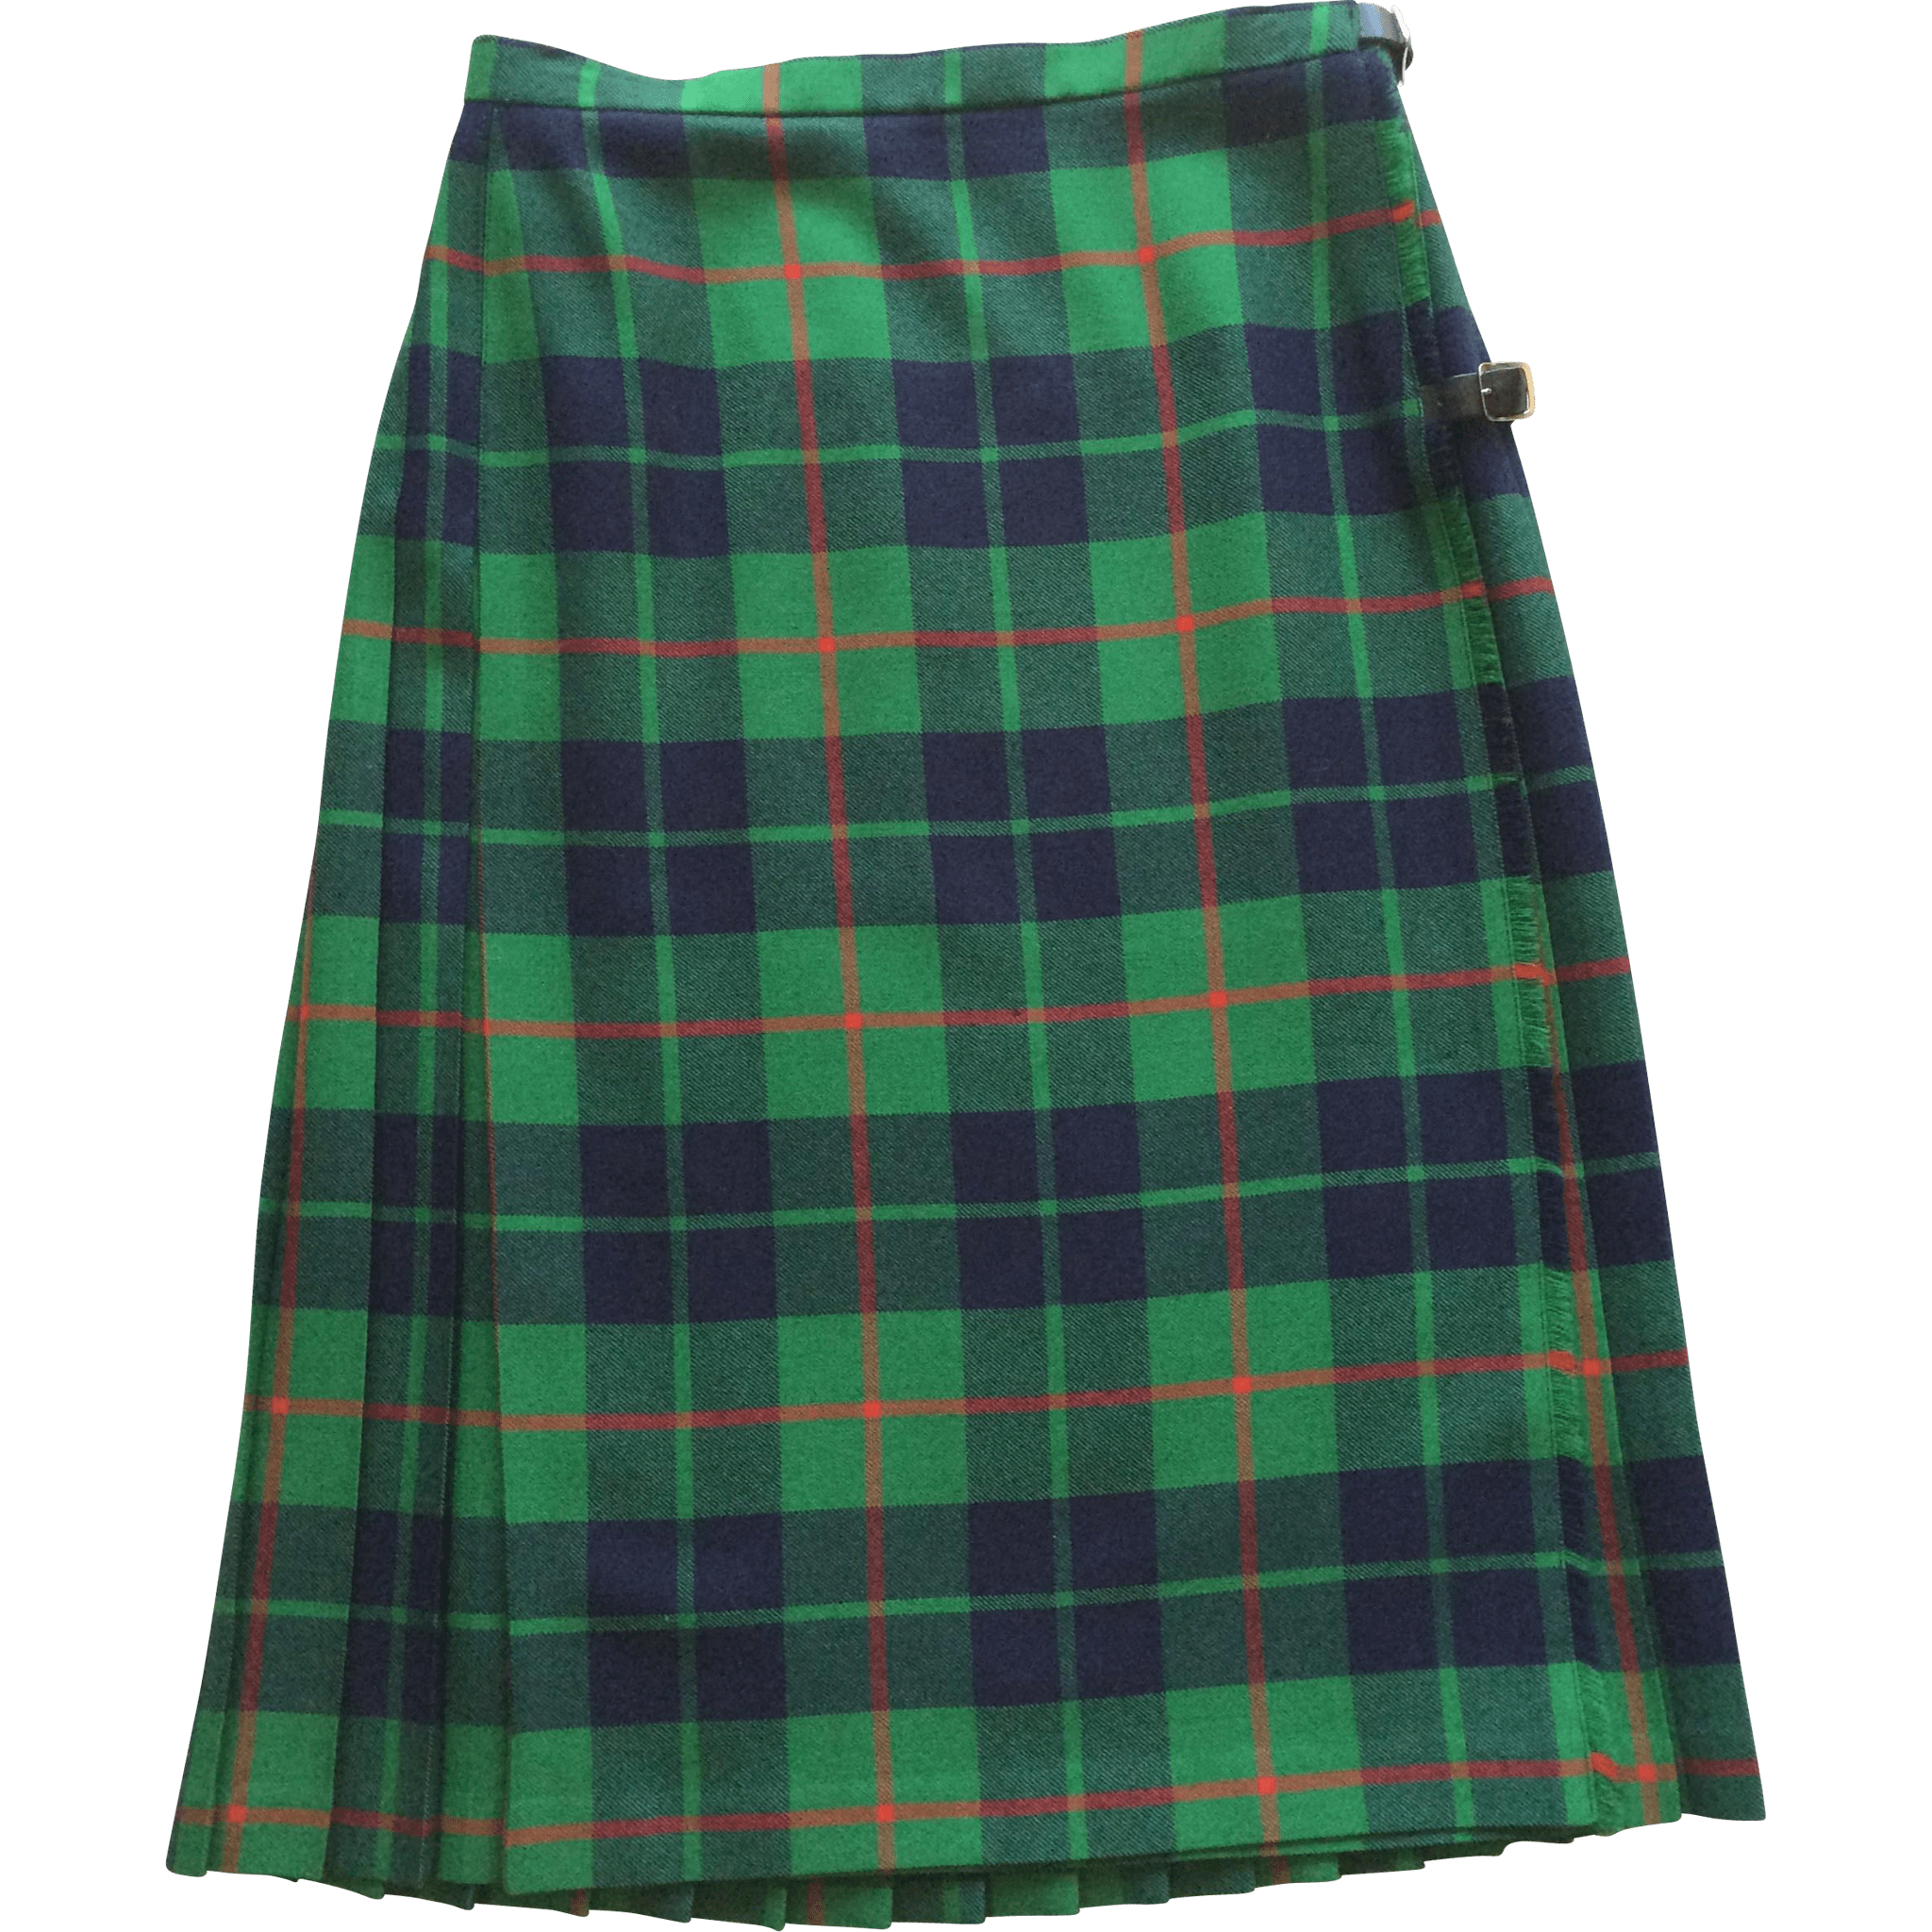 Vintage Scottish Kilt PNG images